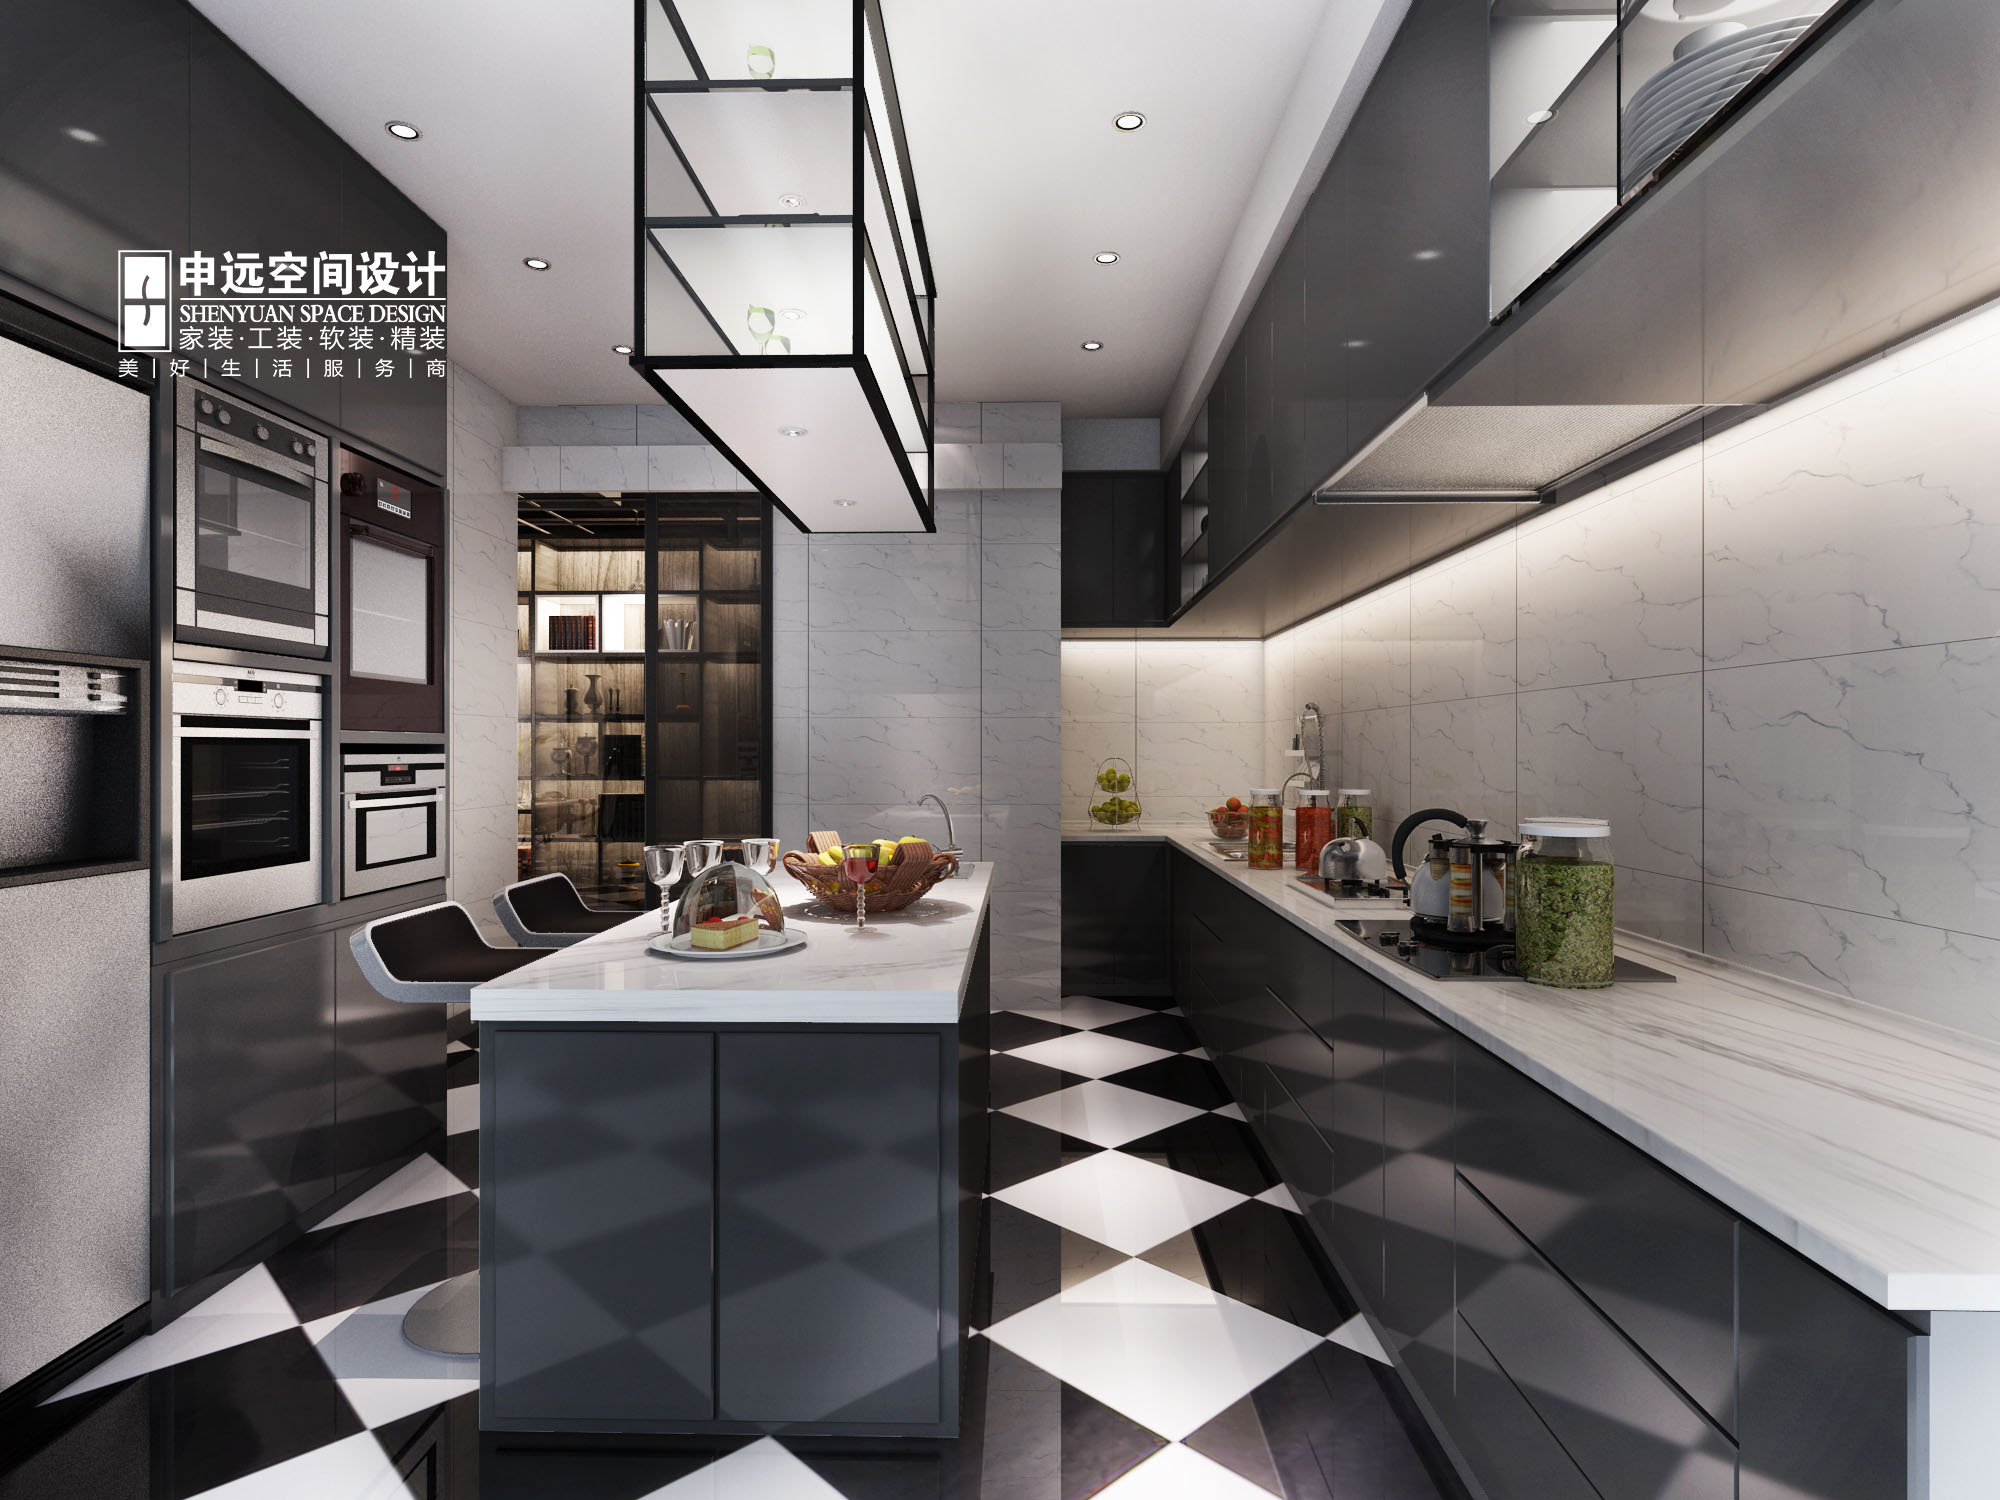 欧式 简约 别墅 简欧 厨房图片来自申远空间设计北京分公司在简约欧式-财富公馆的分享